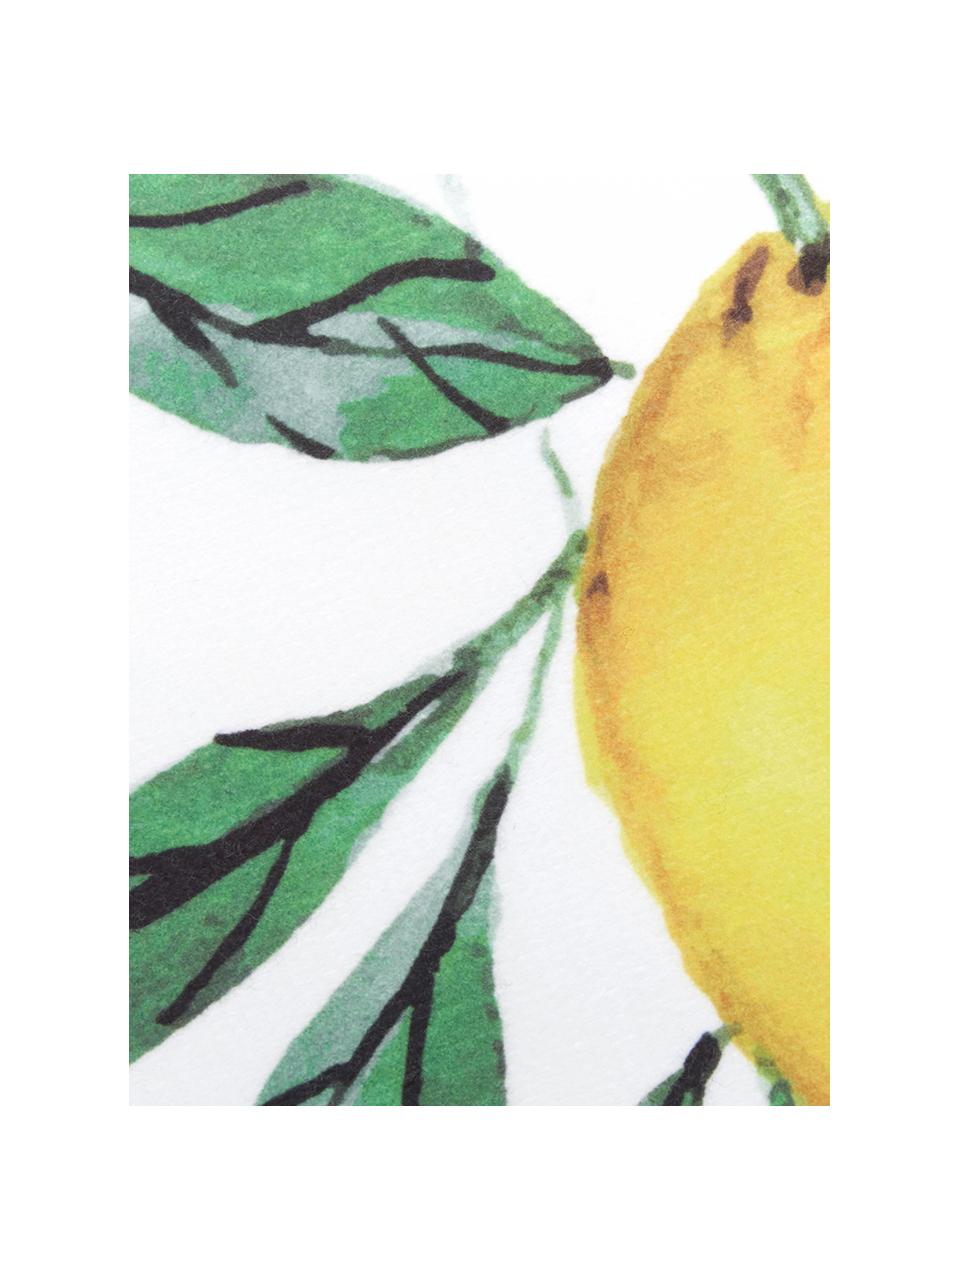 Leichtes Strandtuch Lemon mit Zitronen Print, 55% Polyester, 45% Baumwolle Sehr leichte Qualität, 340 g/m², Weiß, Grün, Gelb, B 70 x L 150 cm